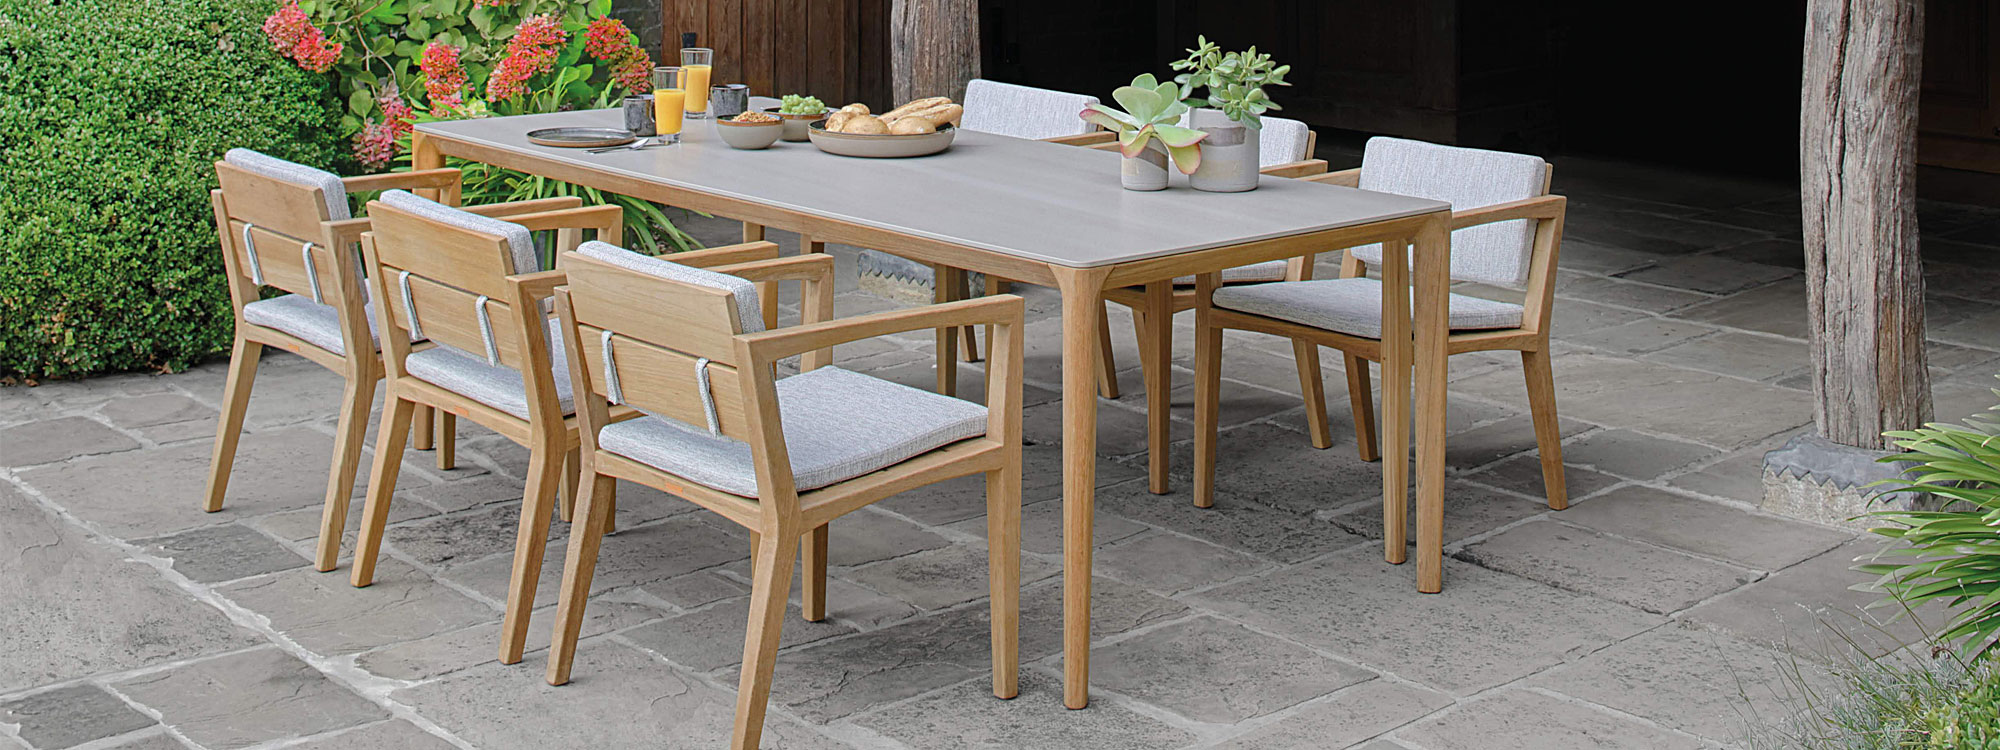 Zenhit teak chair & U-nite ceramic table by Royal Botania garden furniture